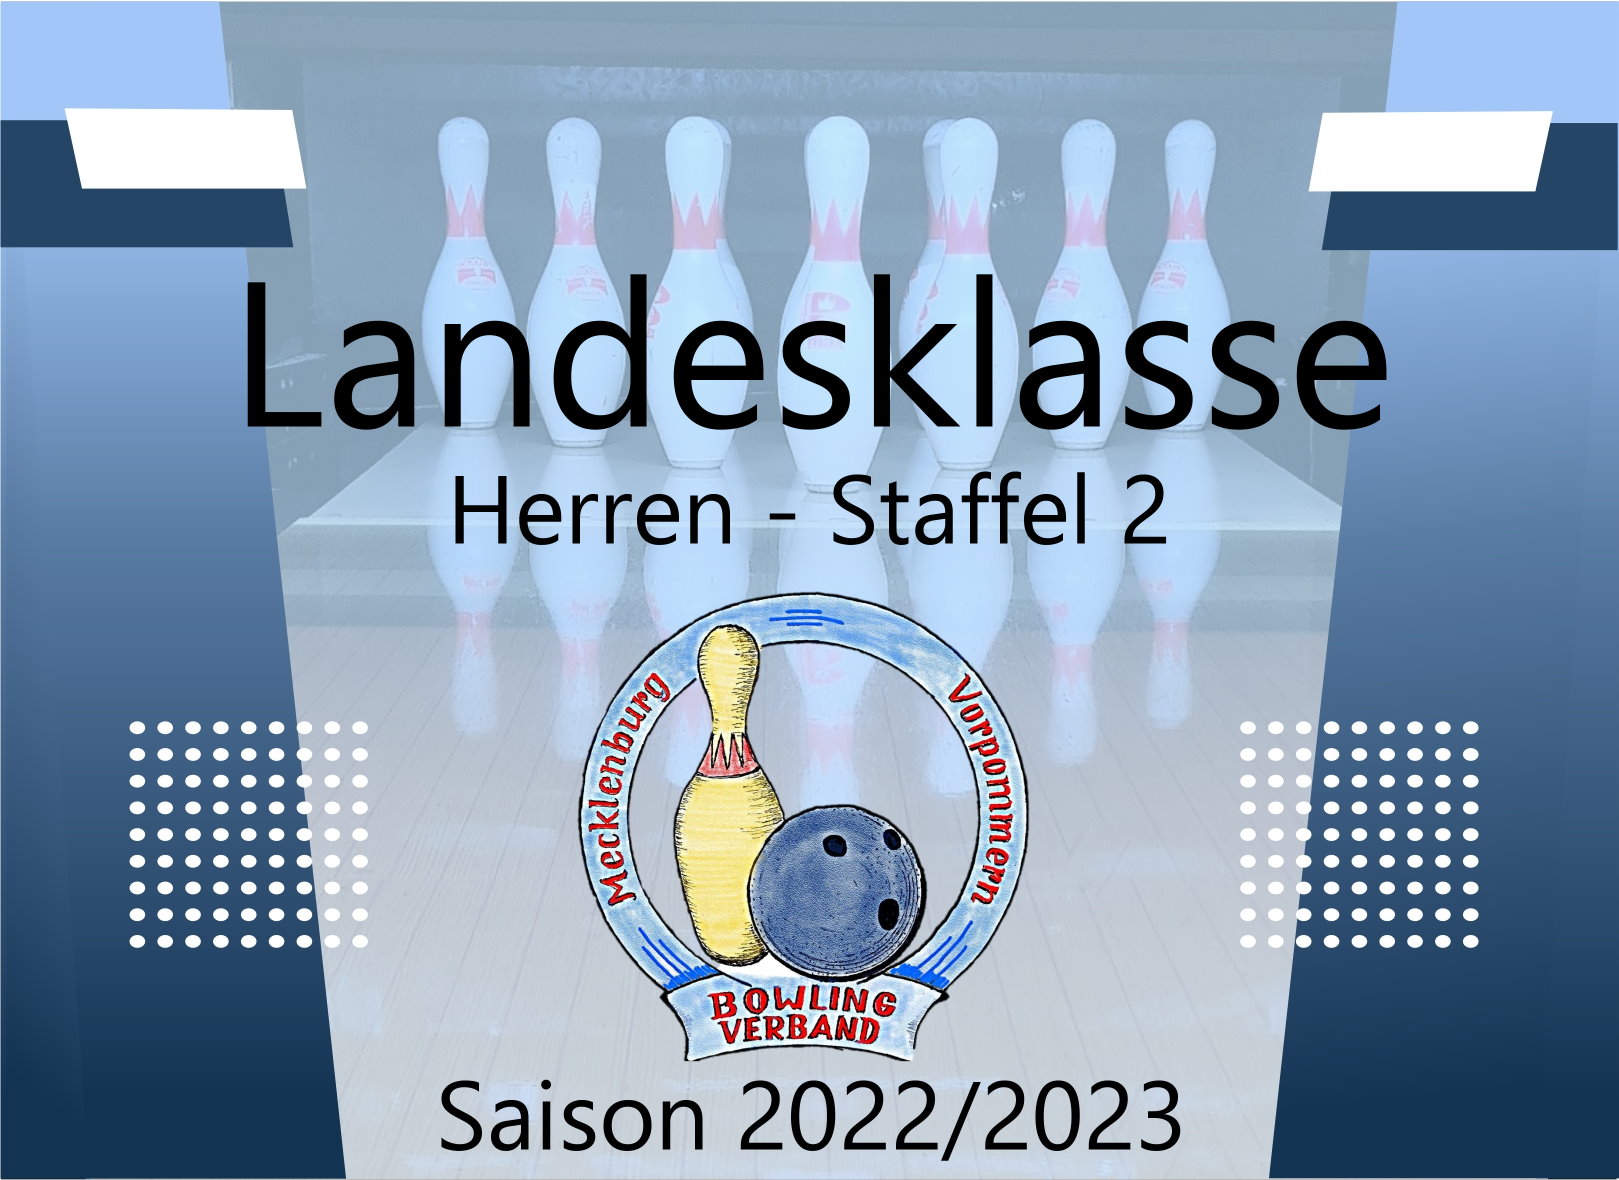 Landesklasse Herren Staffel 2 - 3. Spieltag